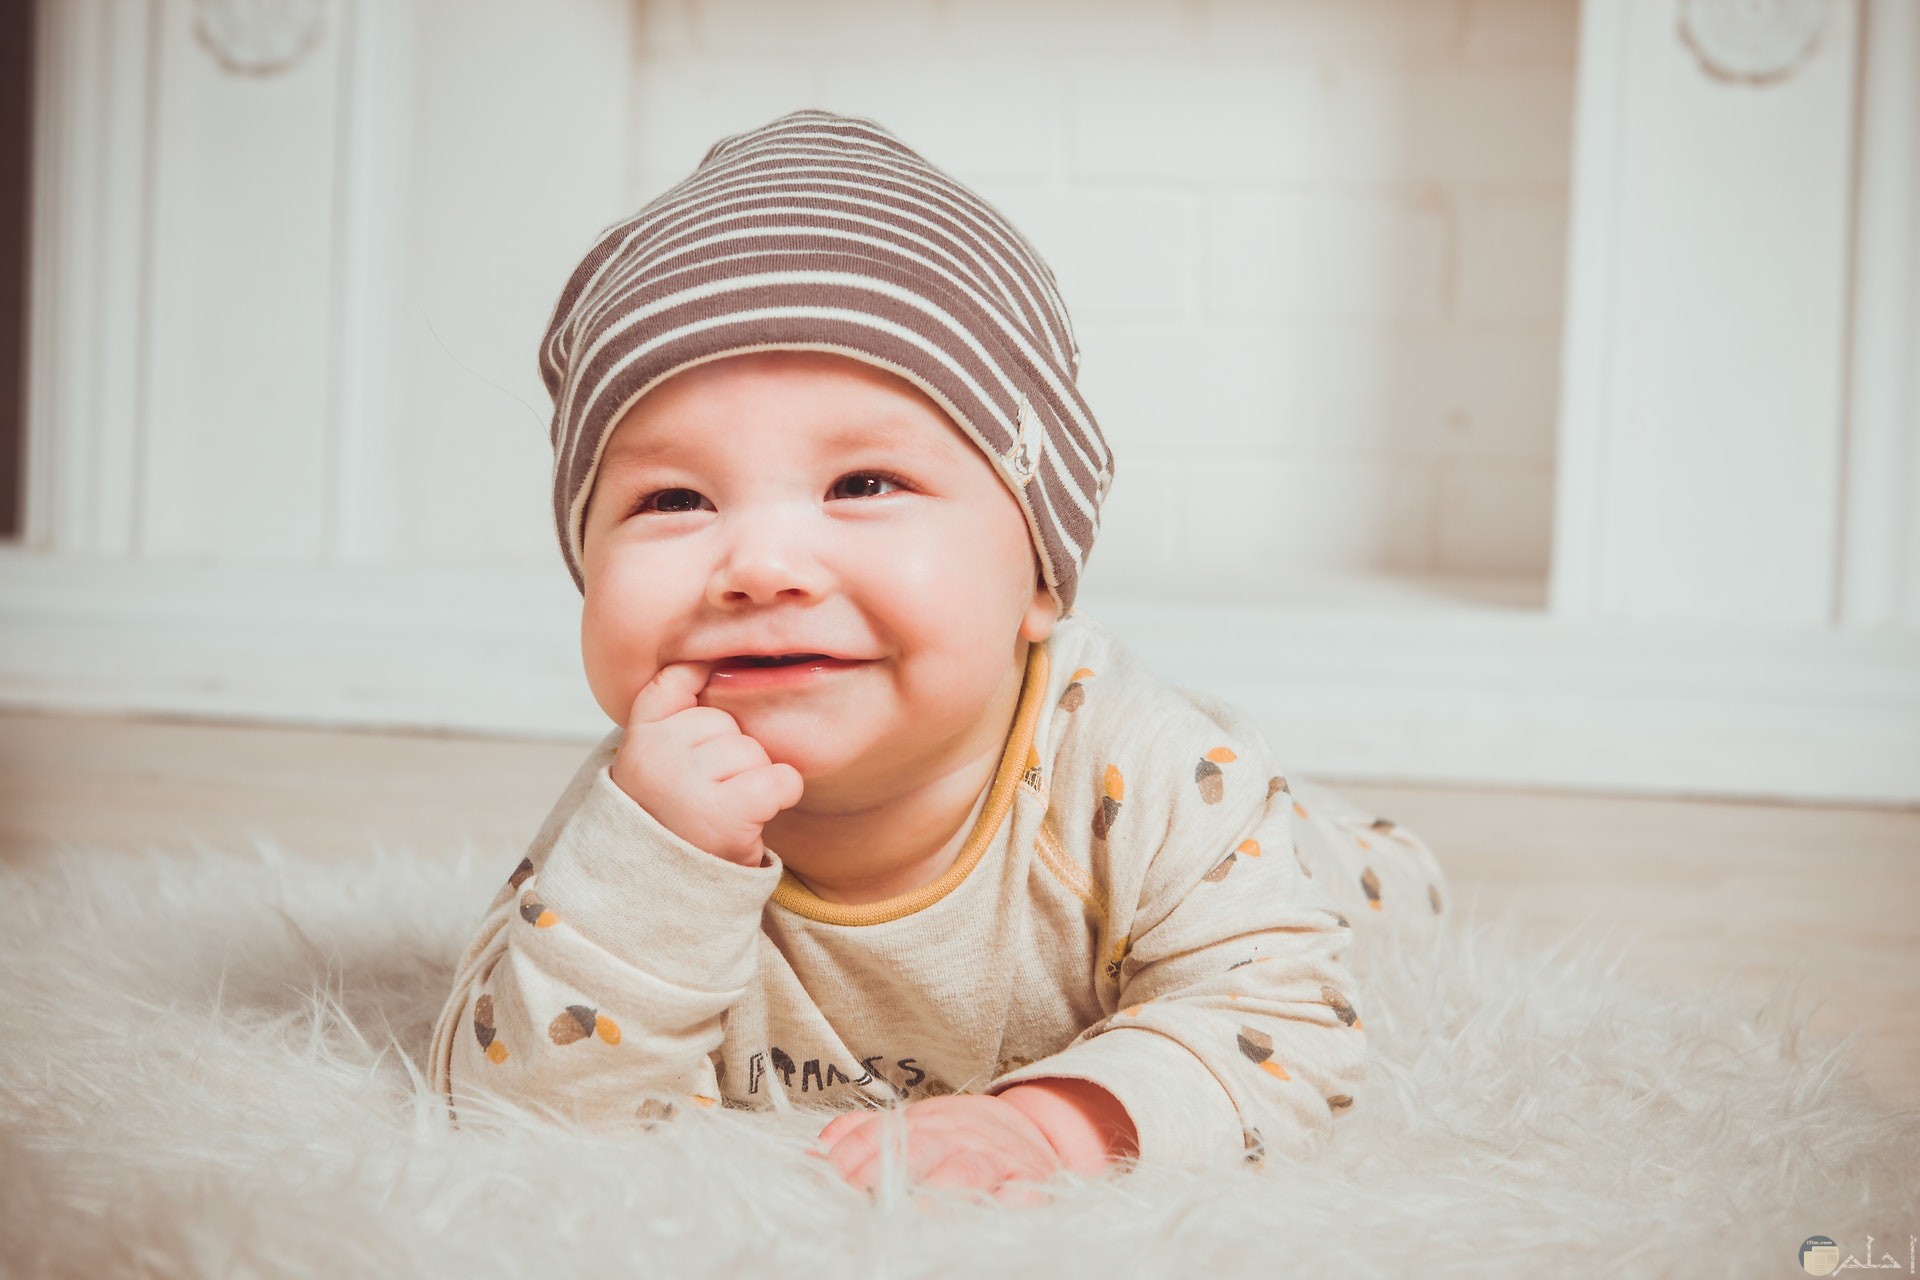 صورة جميلة لطفل صغير بإبتسامة رائعة وهو علي الأرض